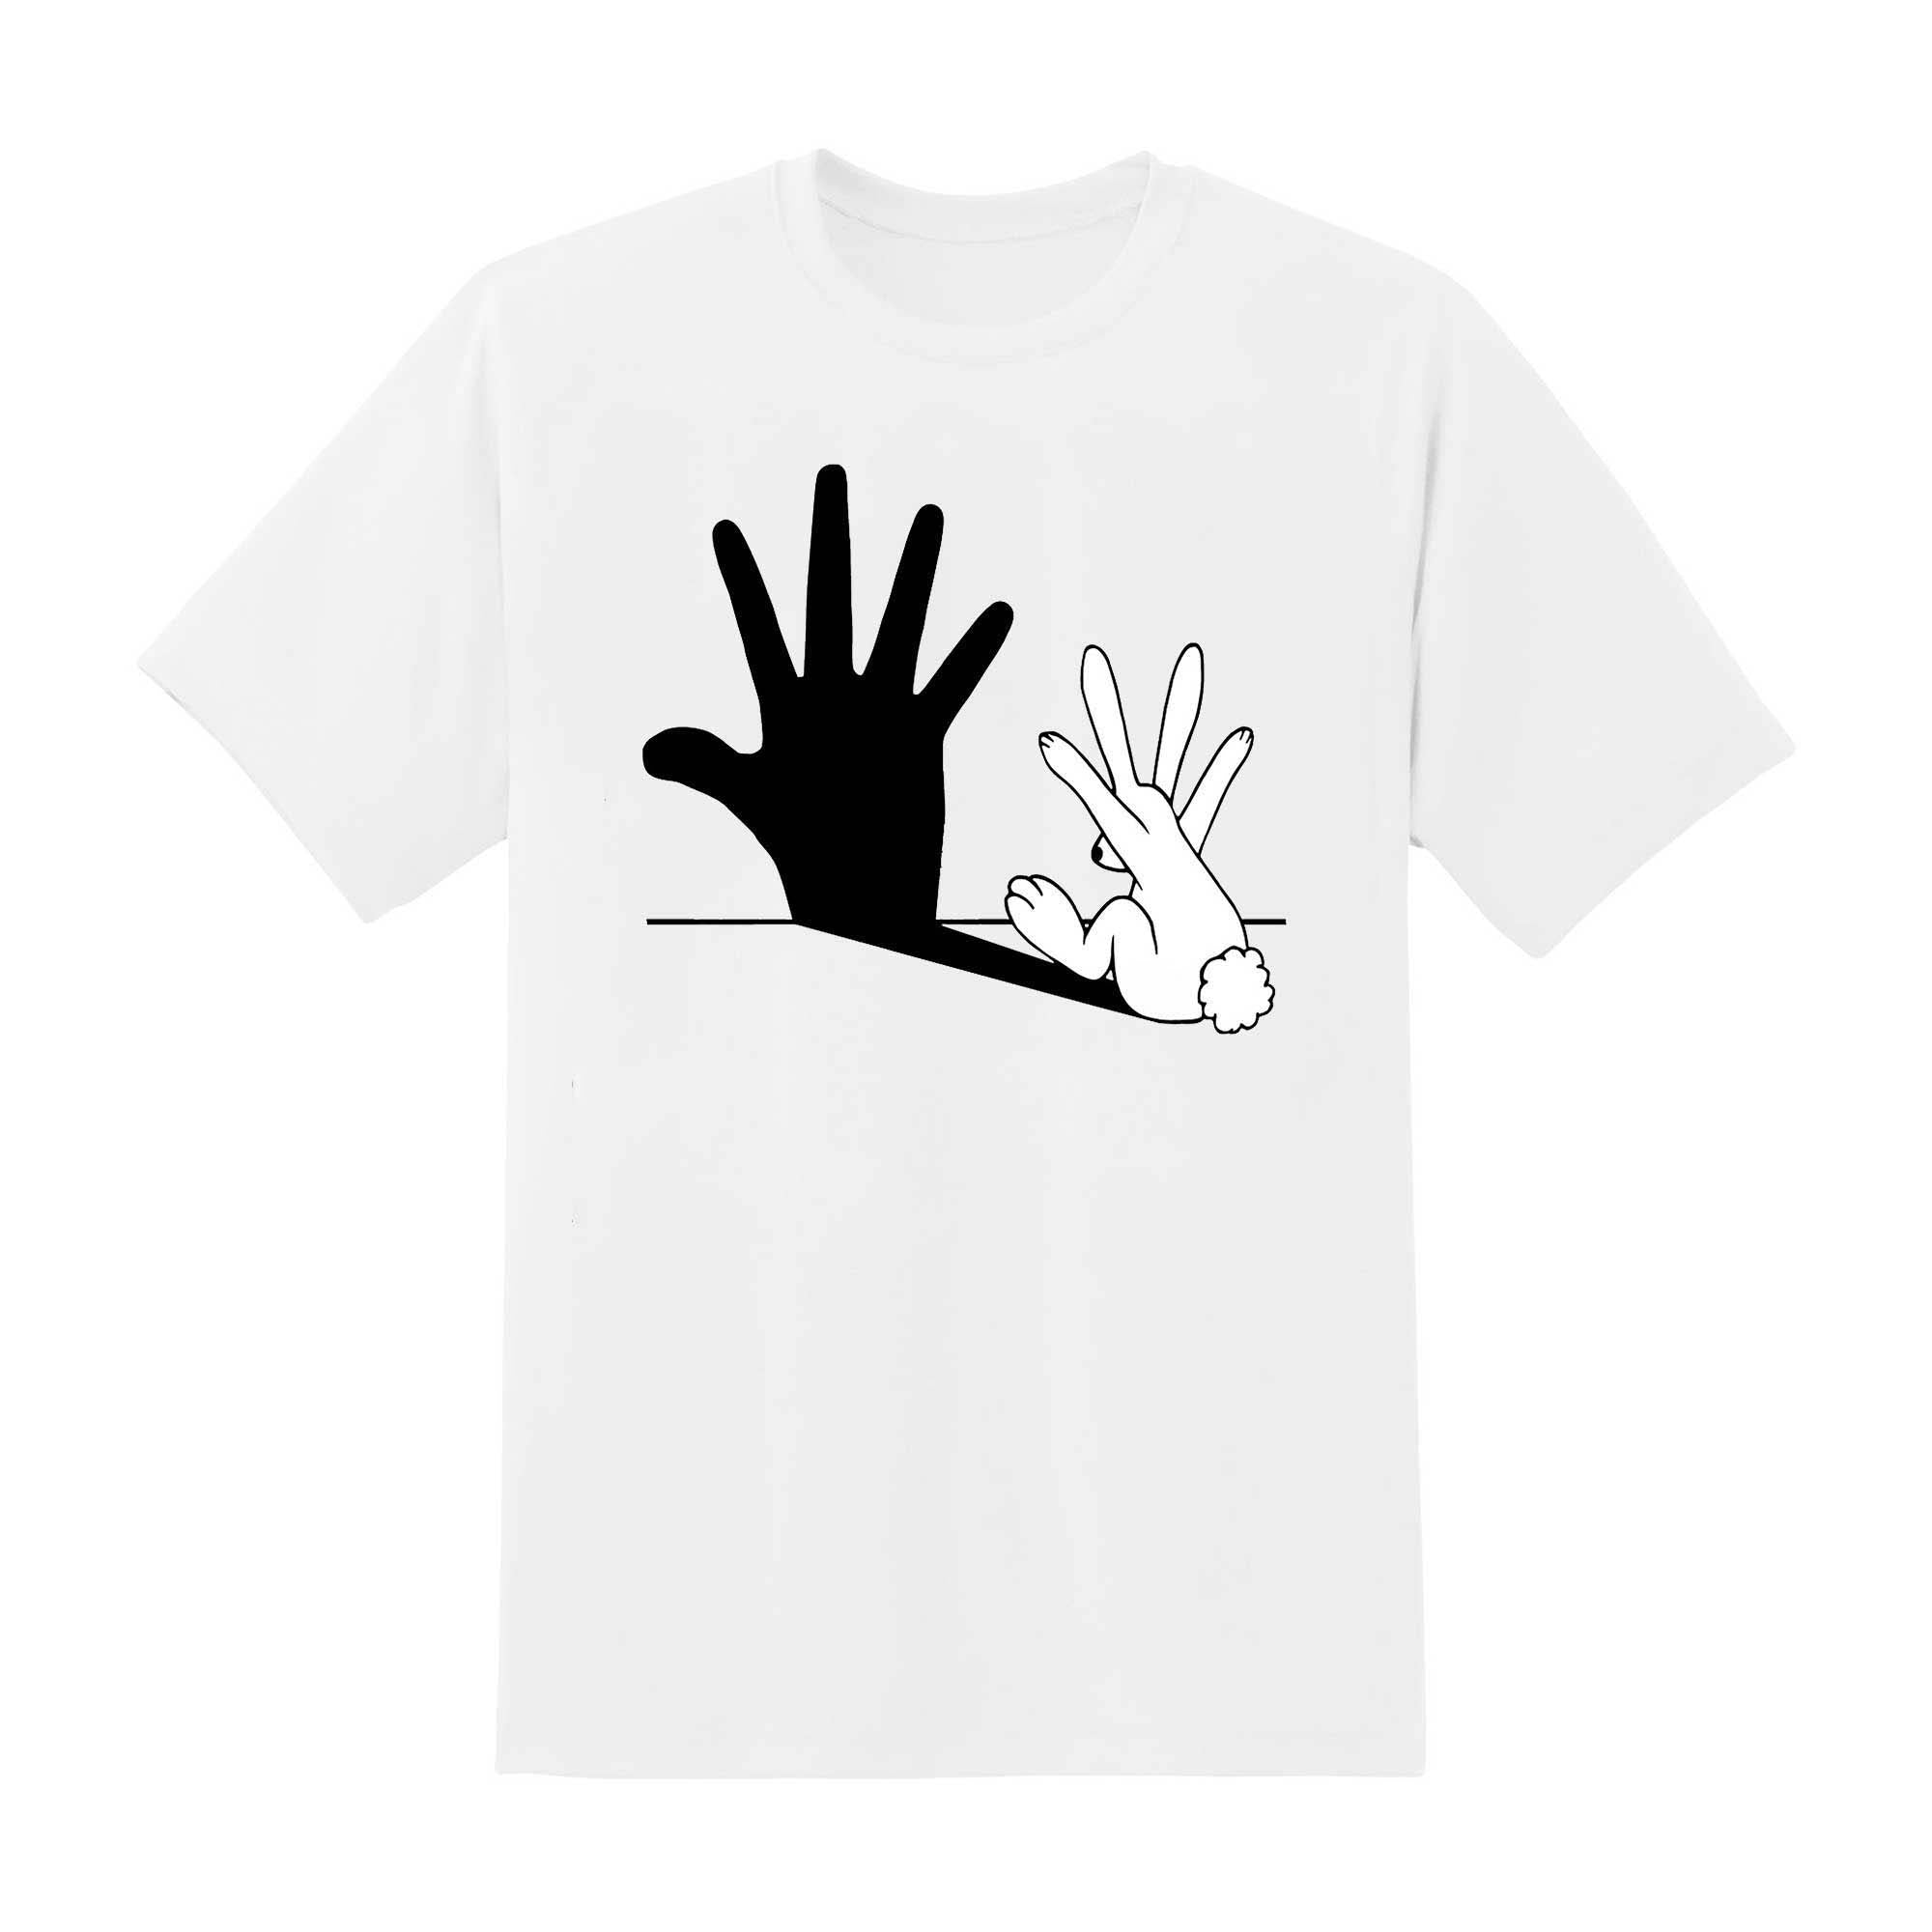 Skitongift Skitongift Rabbit Hand Shadow Classic T Shirt Funny Shirts